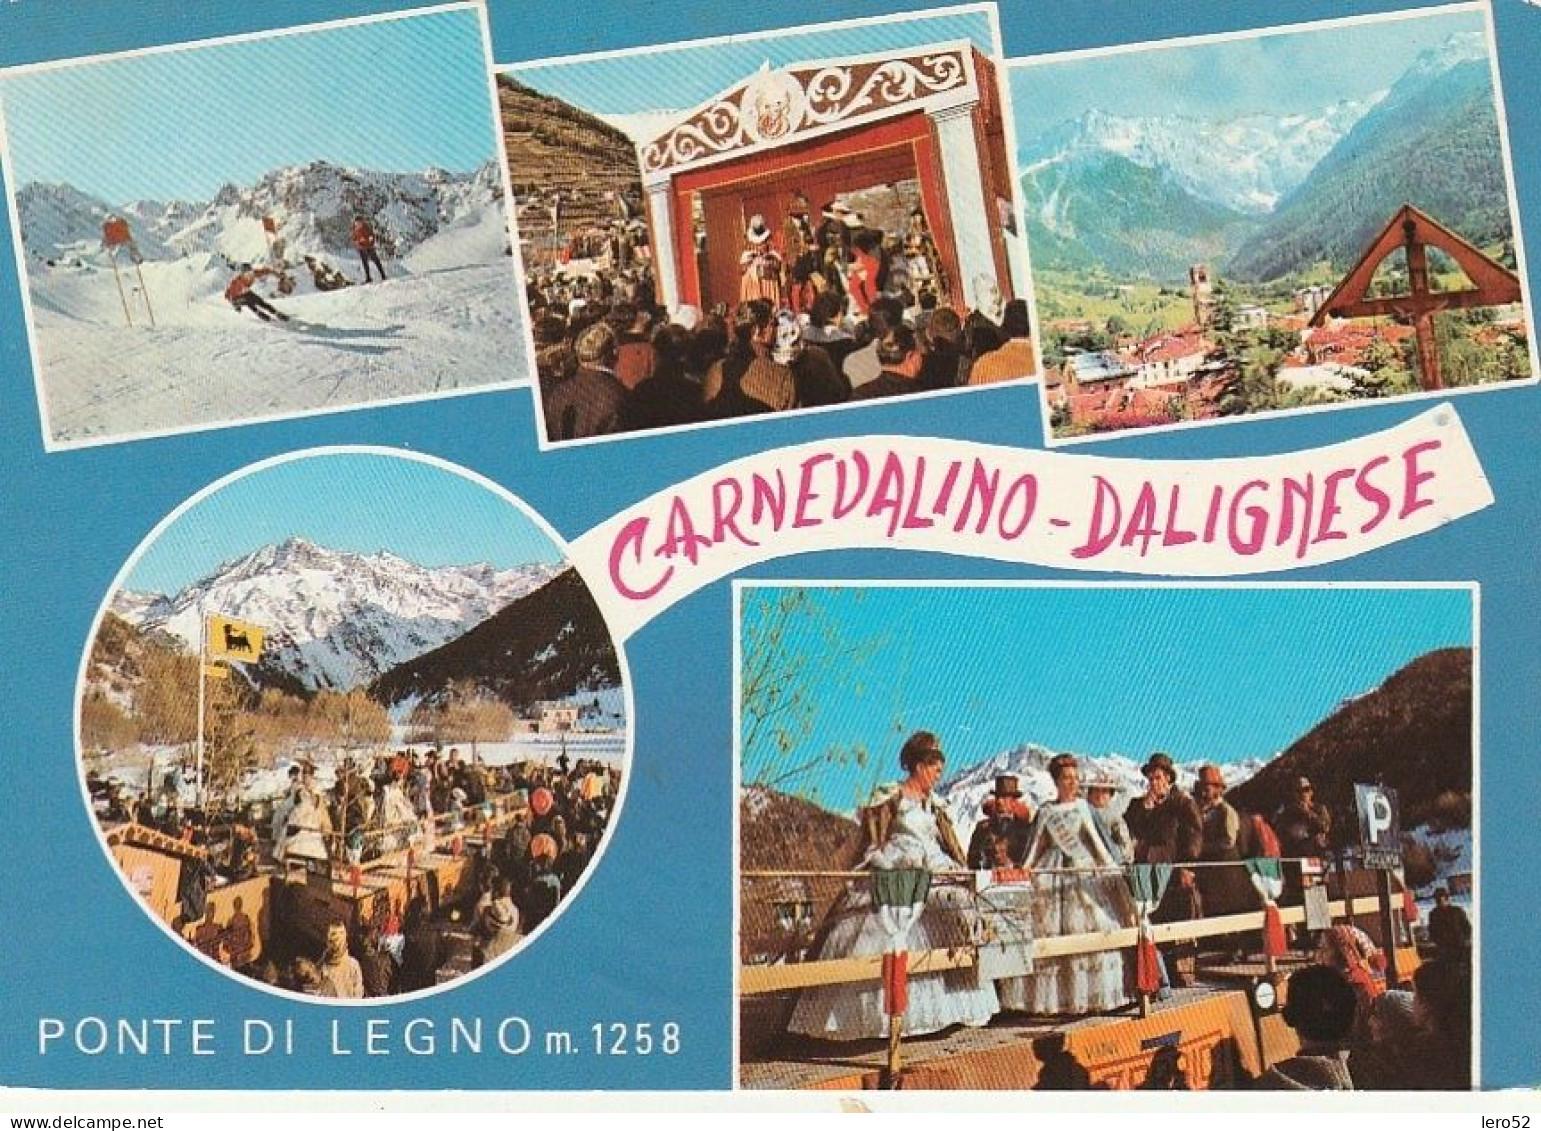 PONTE DI LEGNO CARNEVALINO DALIGNESE VEDUTINE ANNO 1979 VIAGGIATA - Brescia